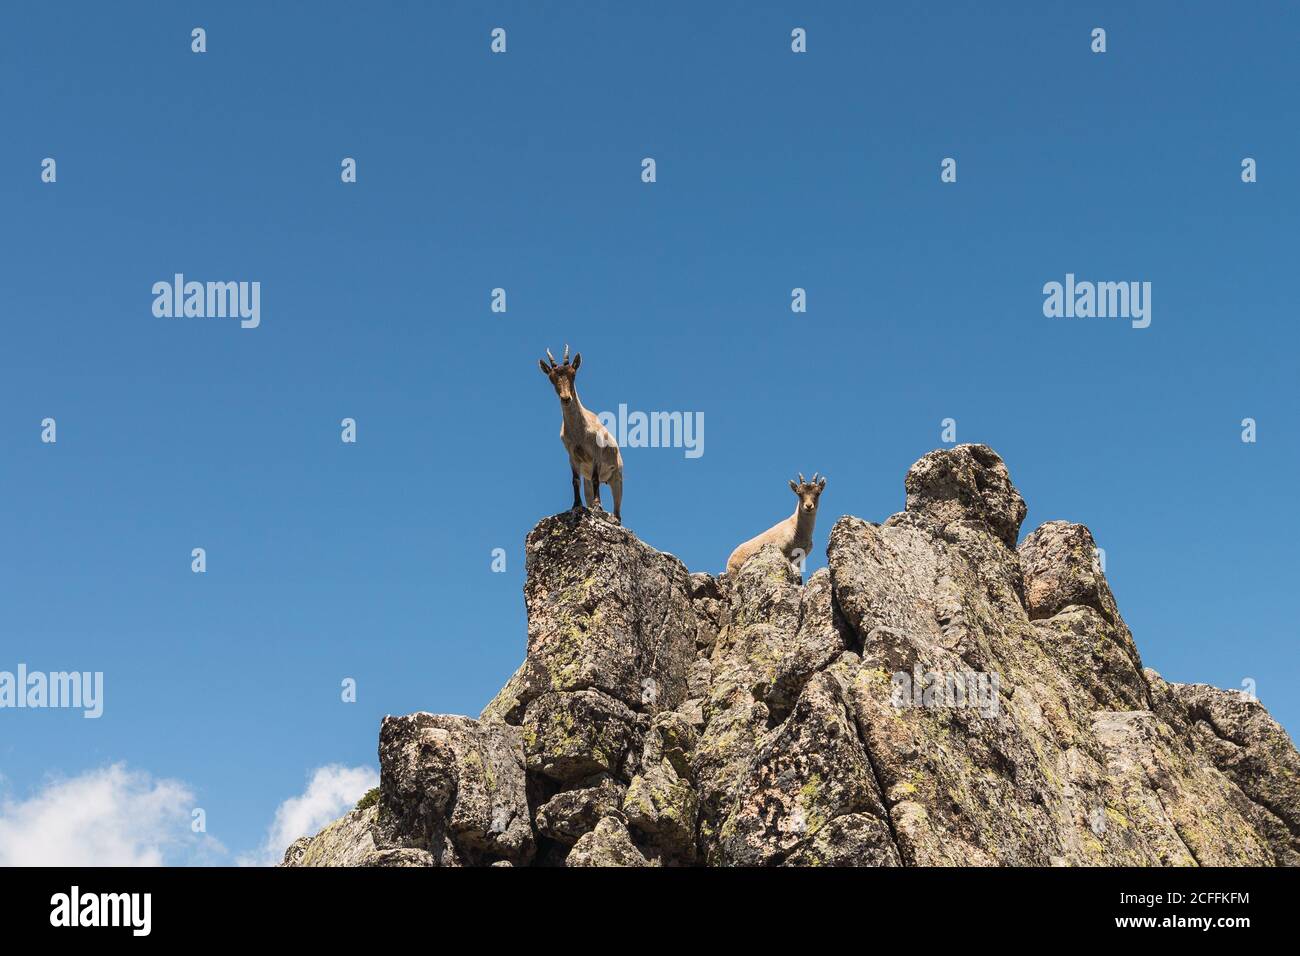 D'en dessous de chèvre gris regardant avec curiosité debout sur la pierreuse rochers sur fond de ciel bleu vif Banque D'Images